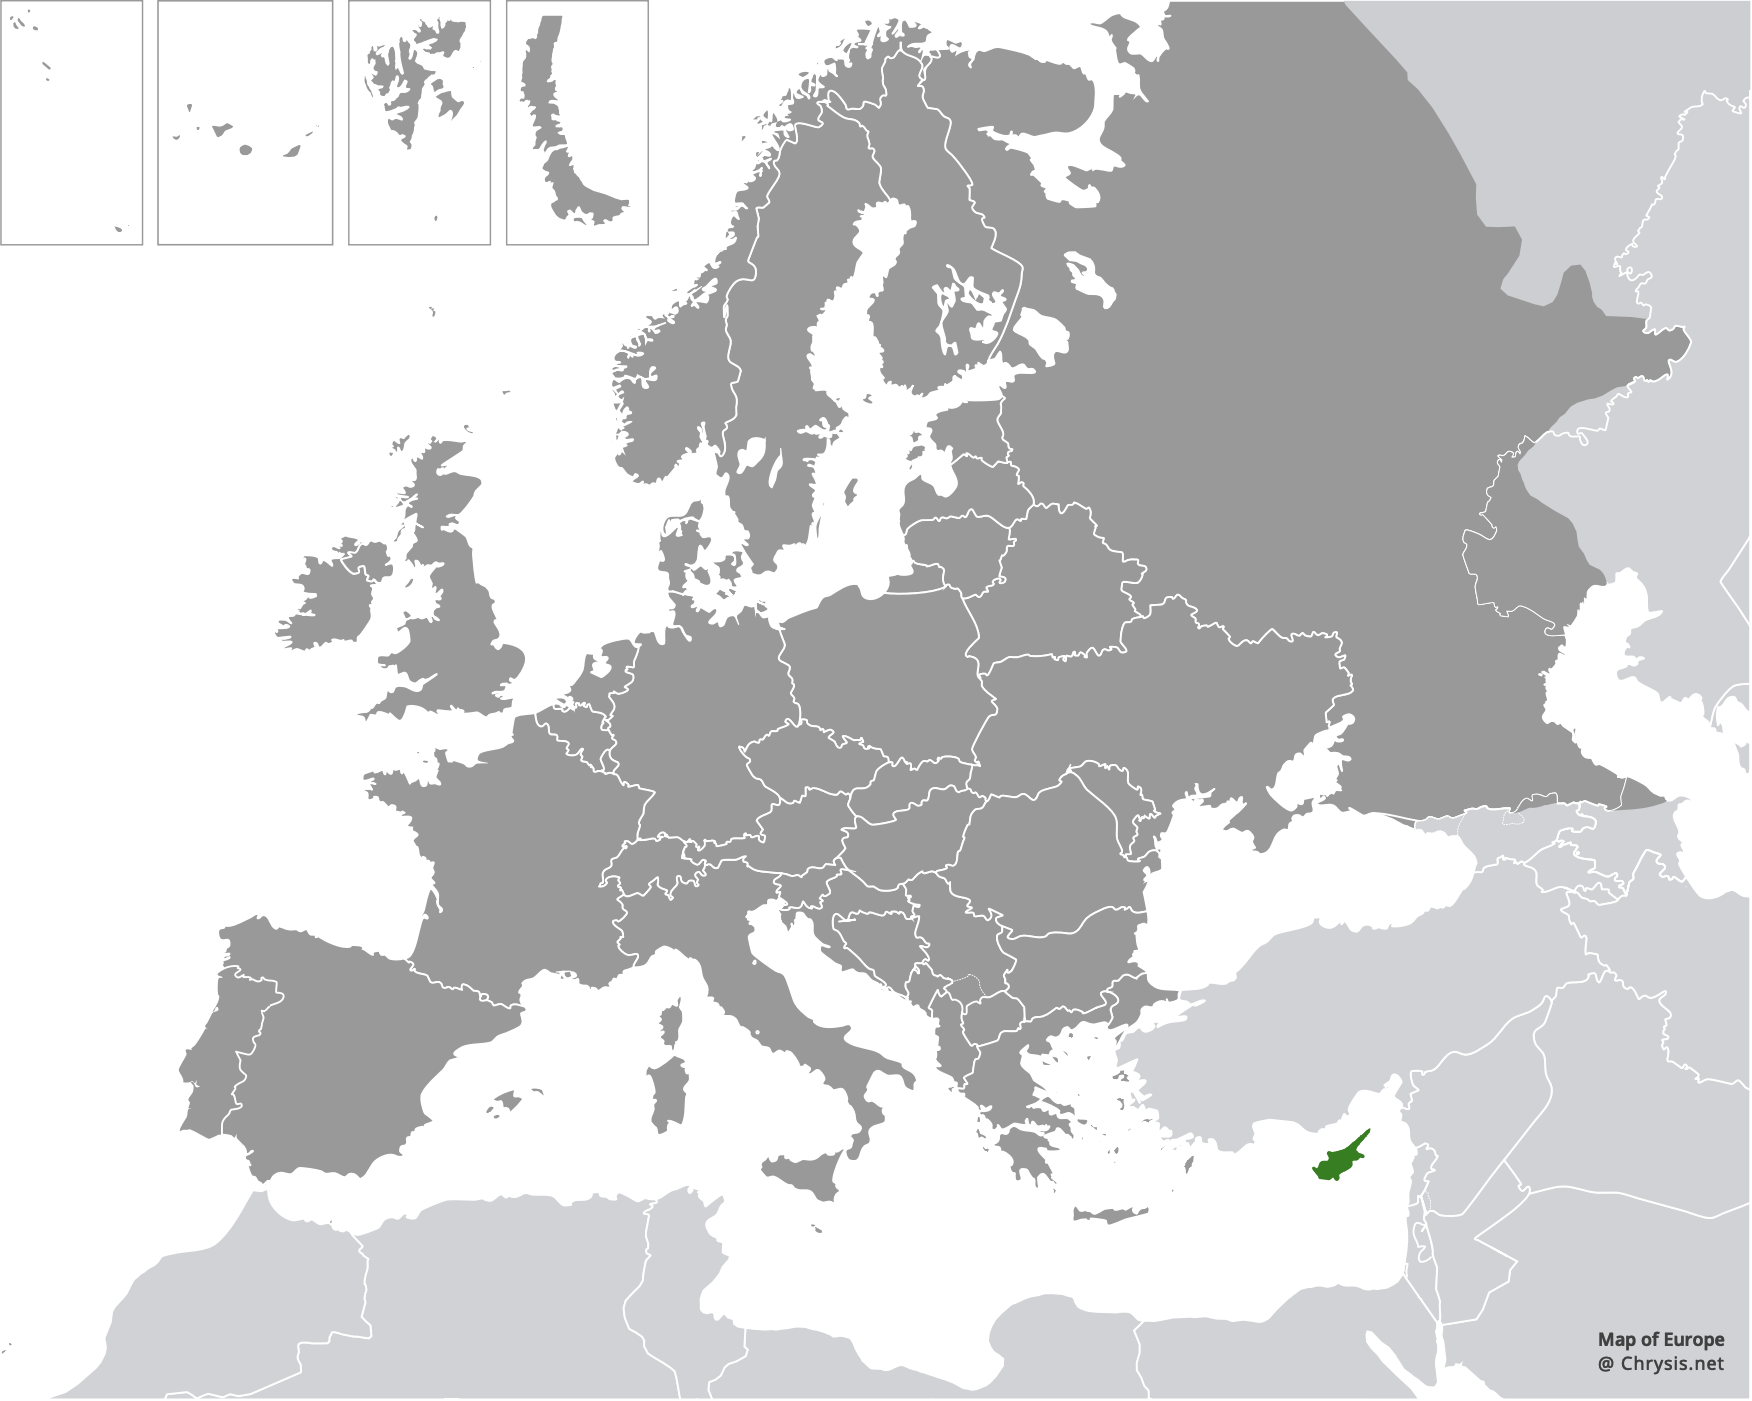 European distribution of Chrysis mavromoustakisi